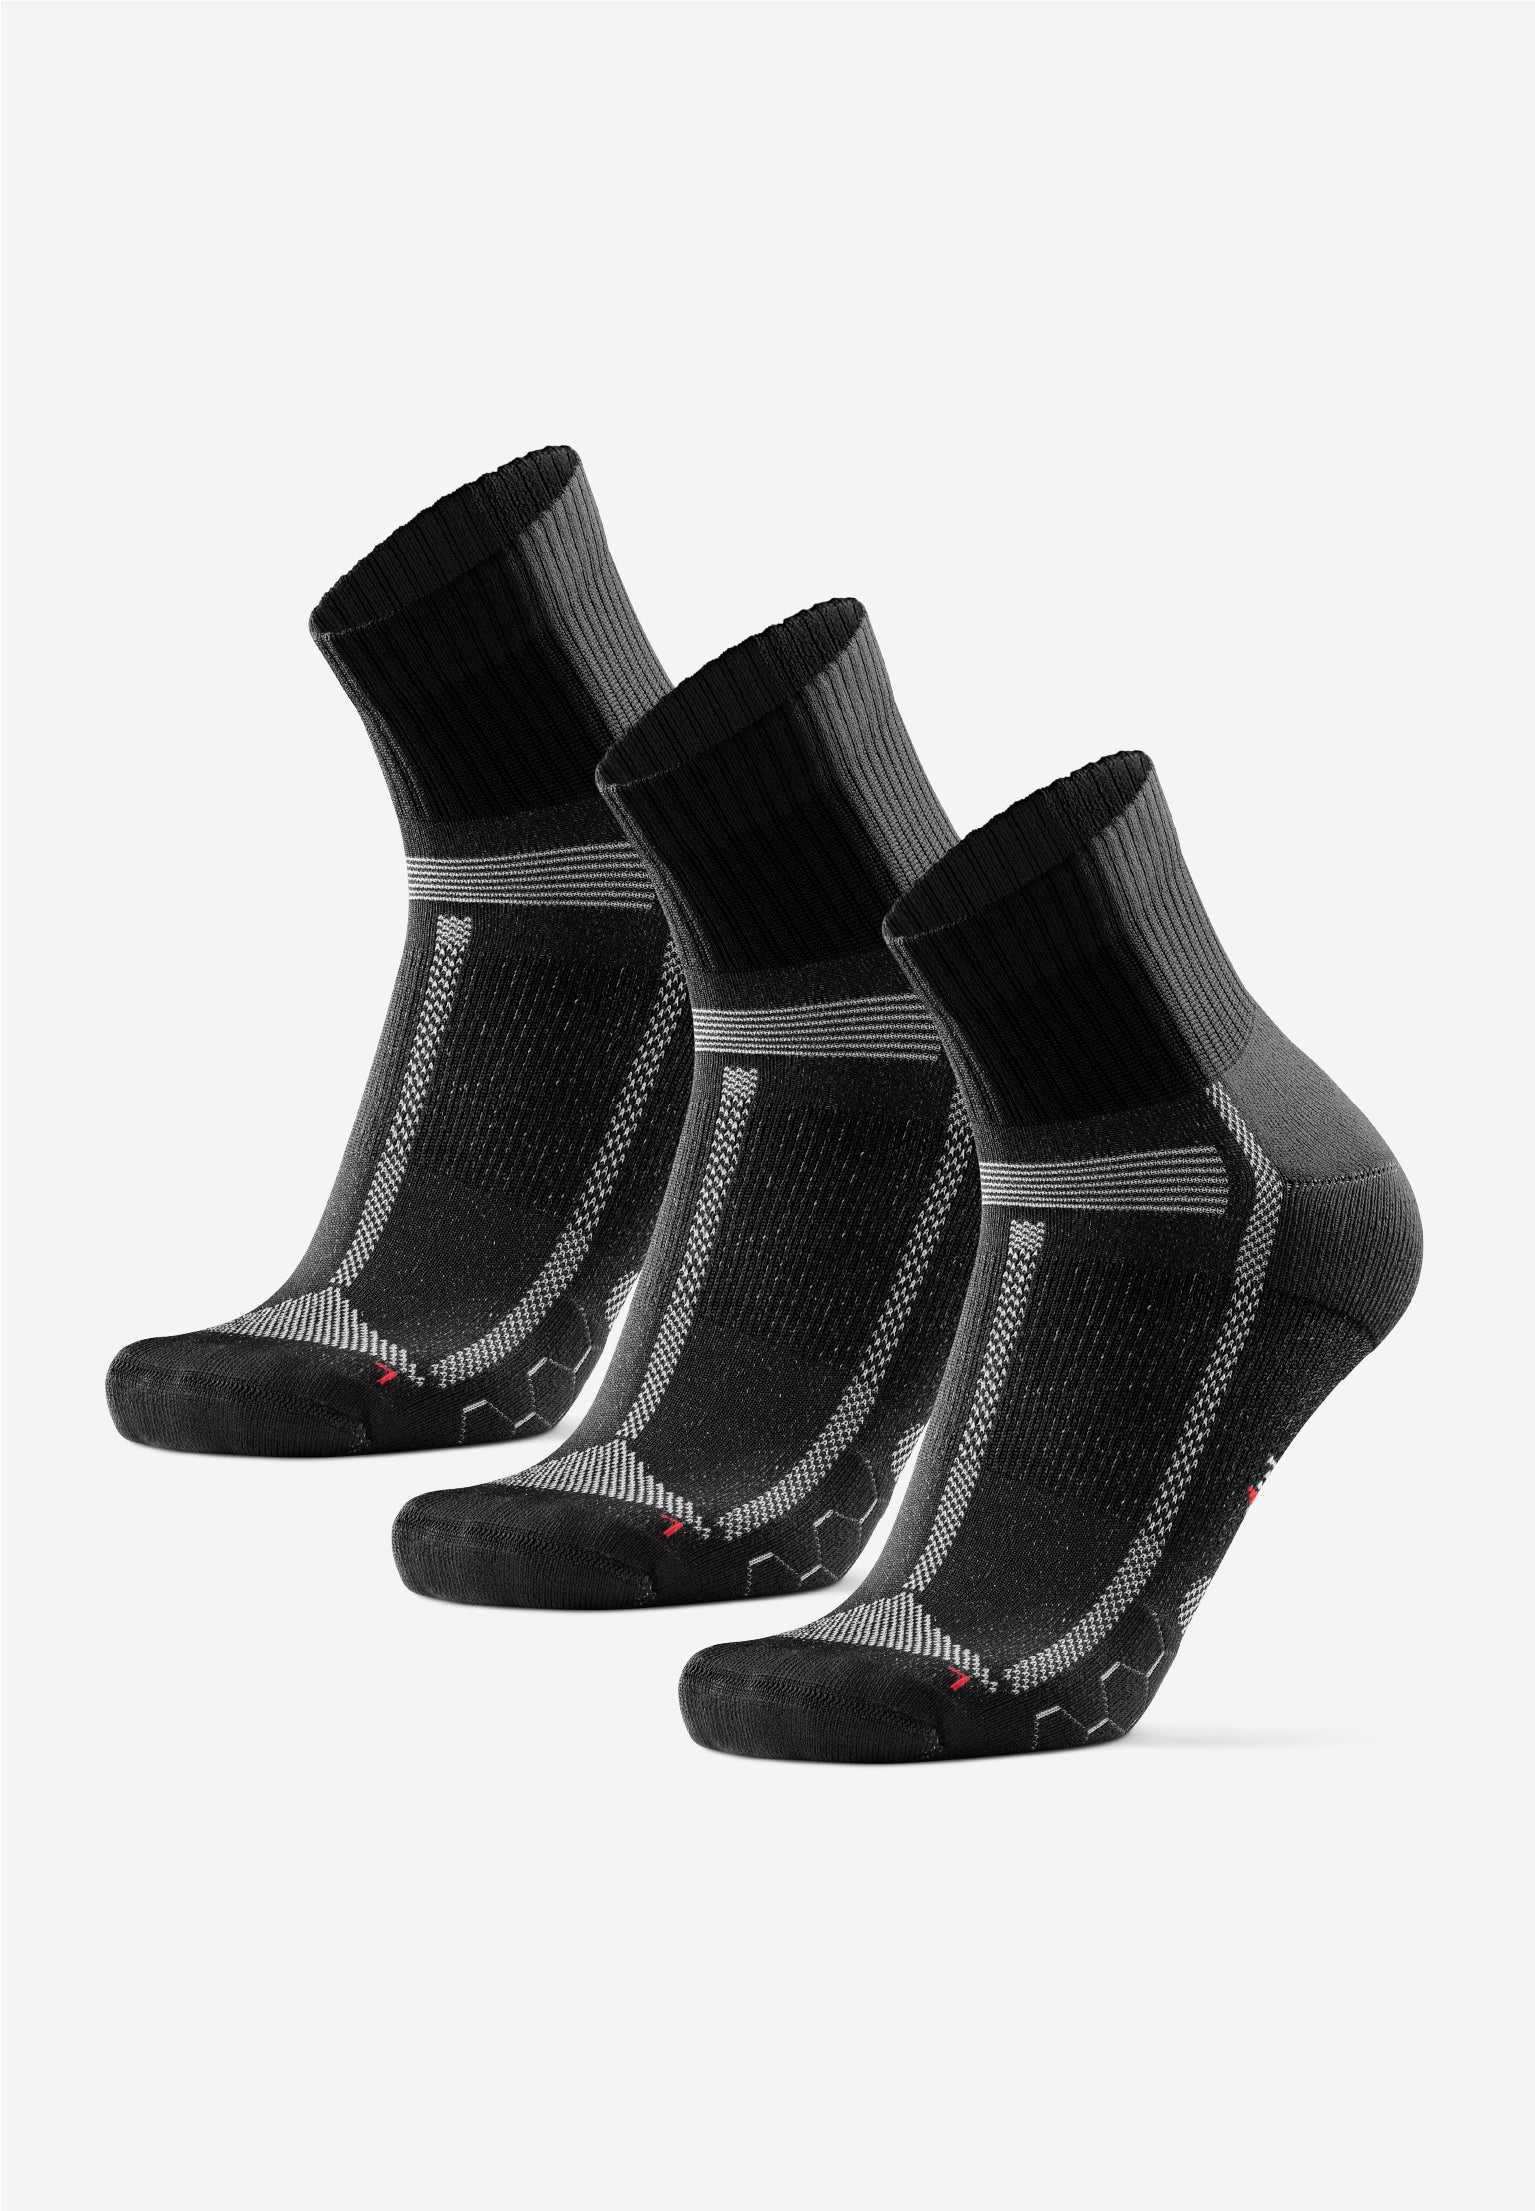 Sports Running Socks Danish Endurance Size UK 9 - 12 3 Pack Anti Blister